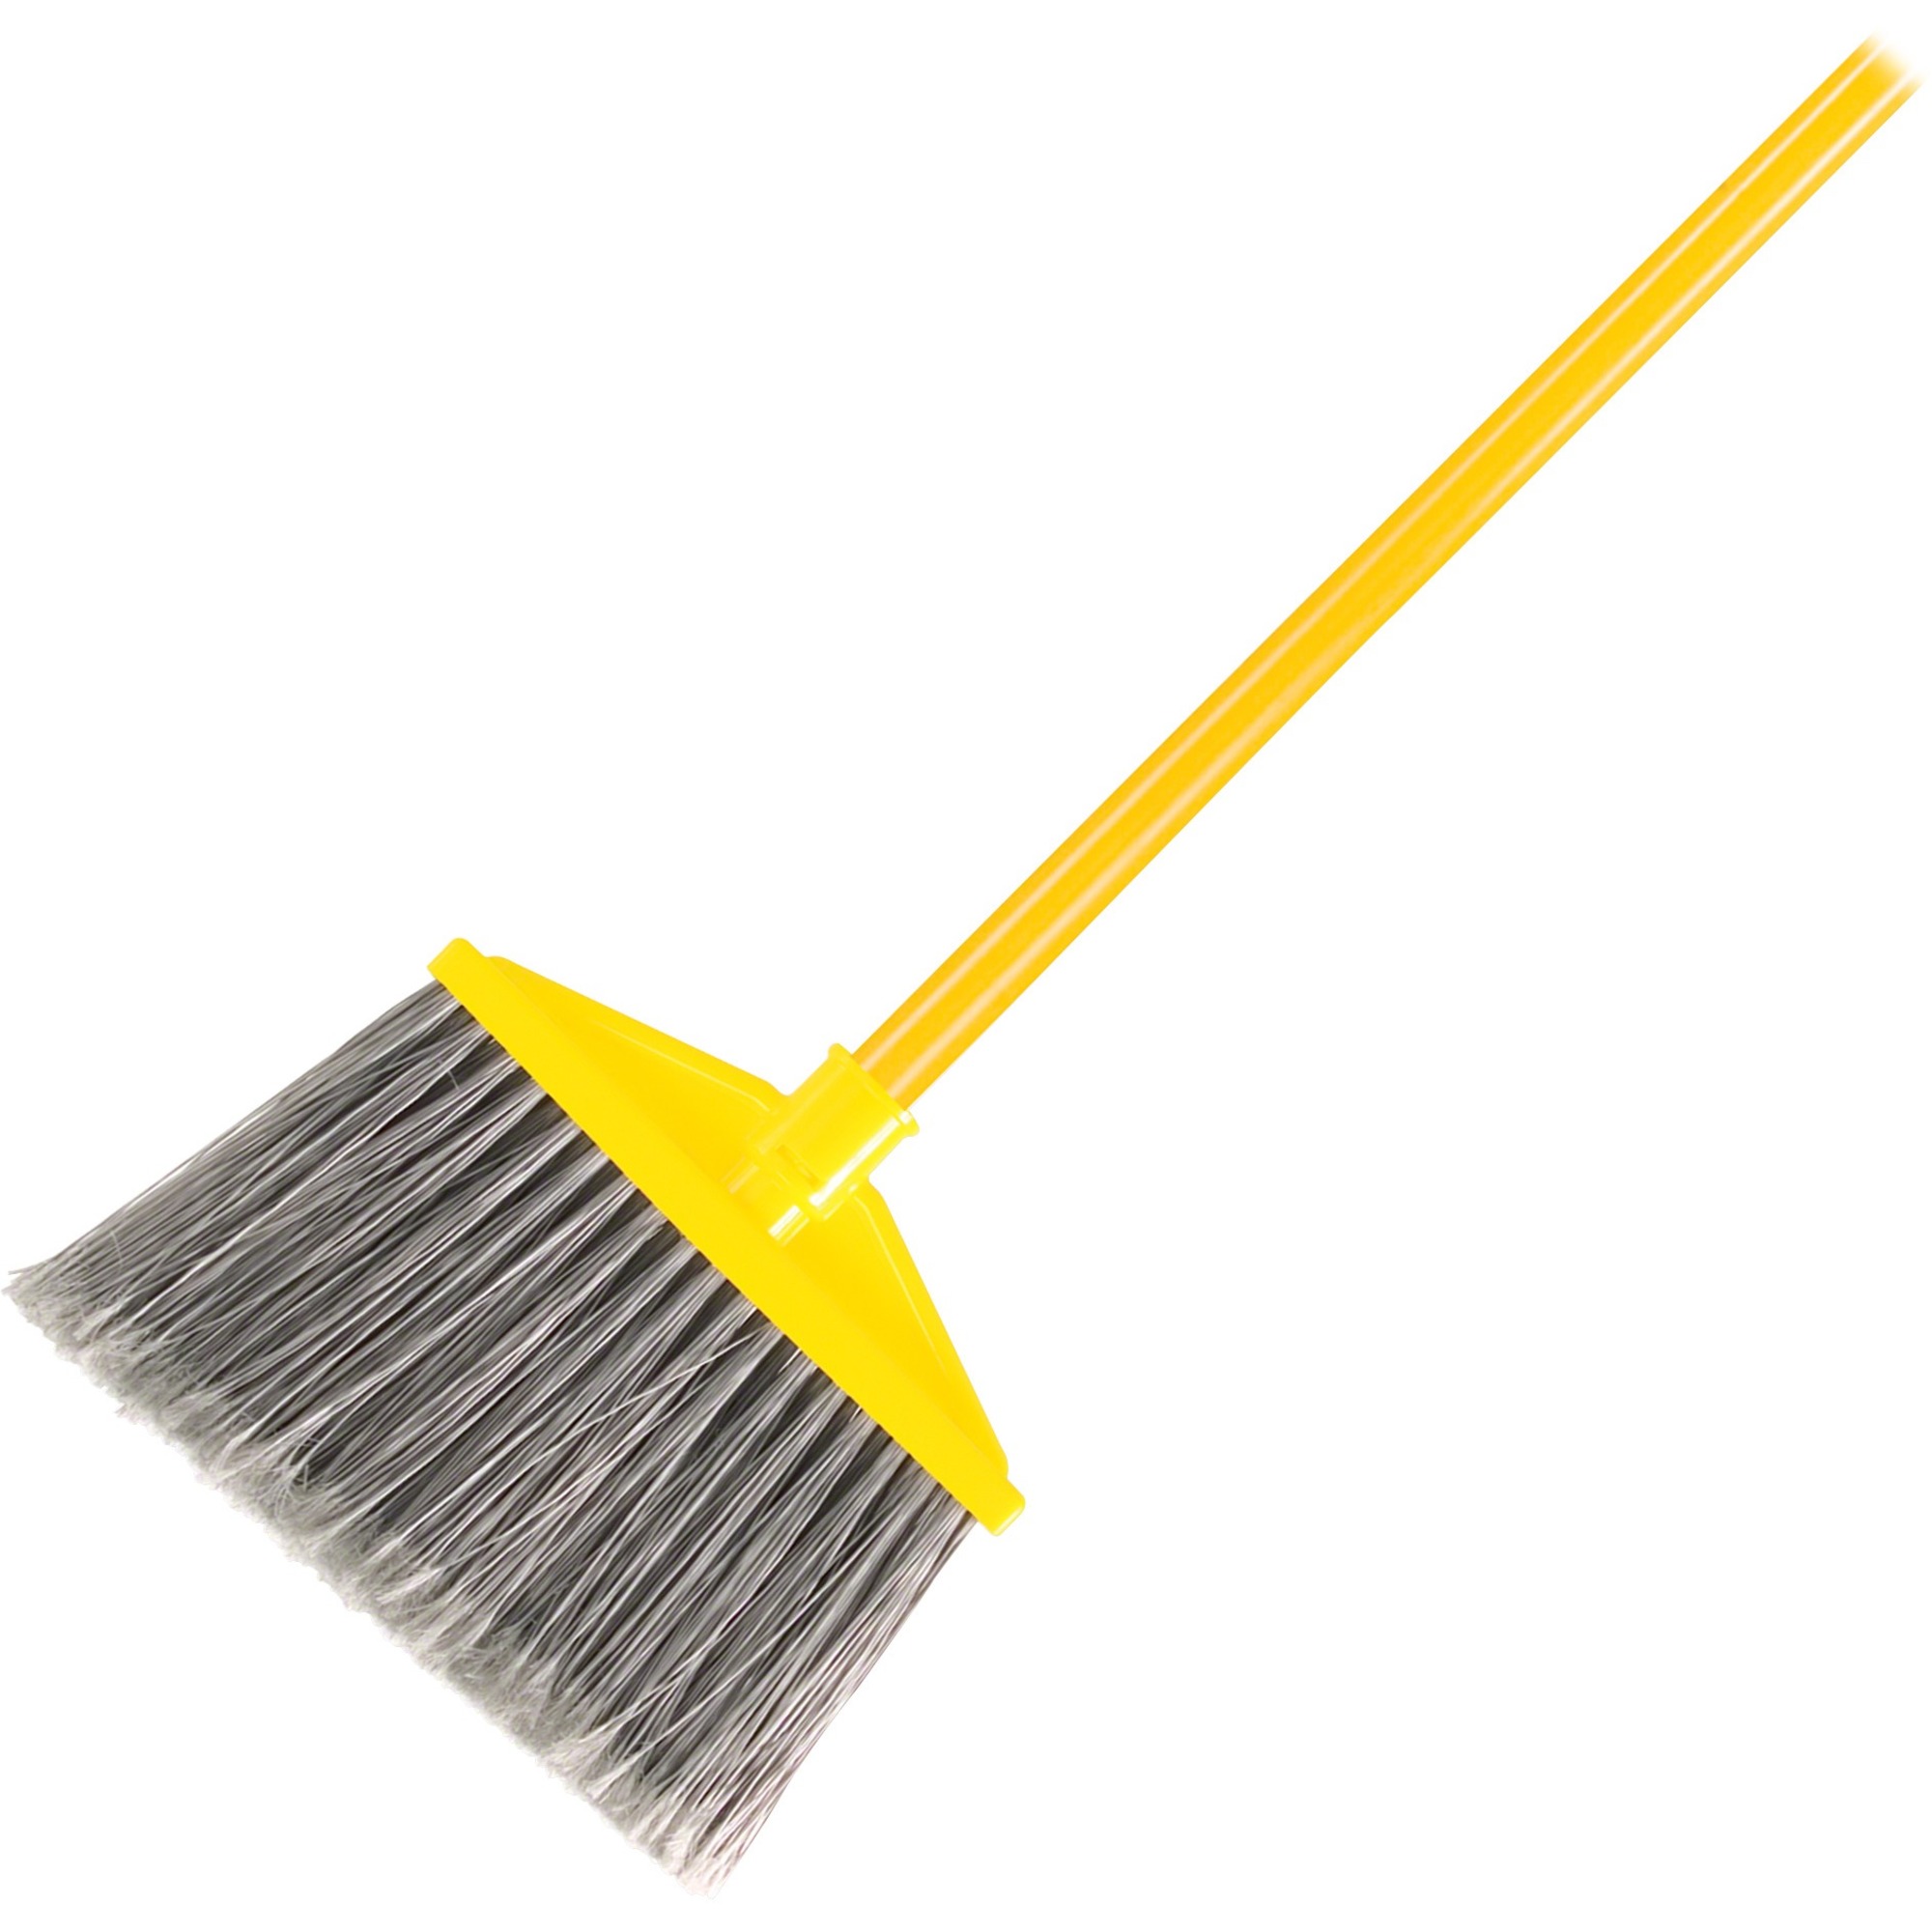 Rubbermaid Tampico-Fill Countertop Brush, Plastic, 12 1/2, Yellow Handle